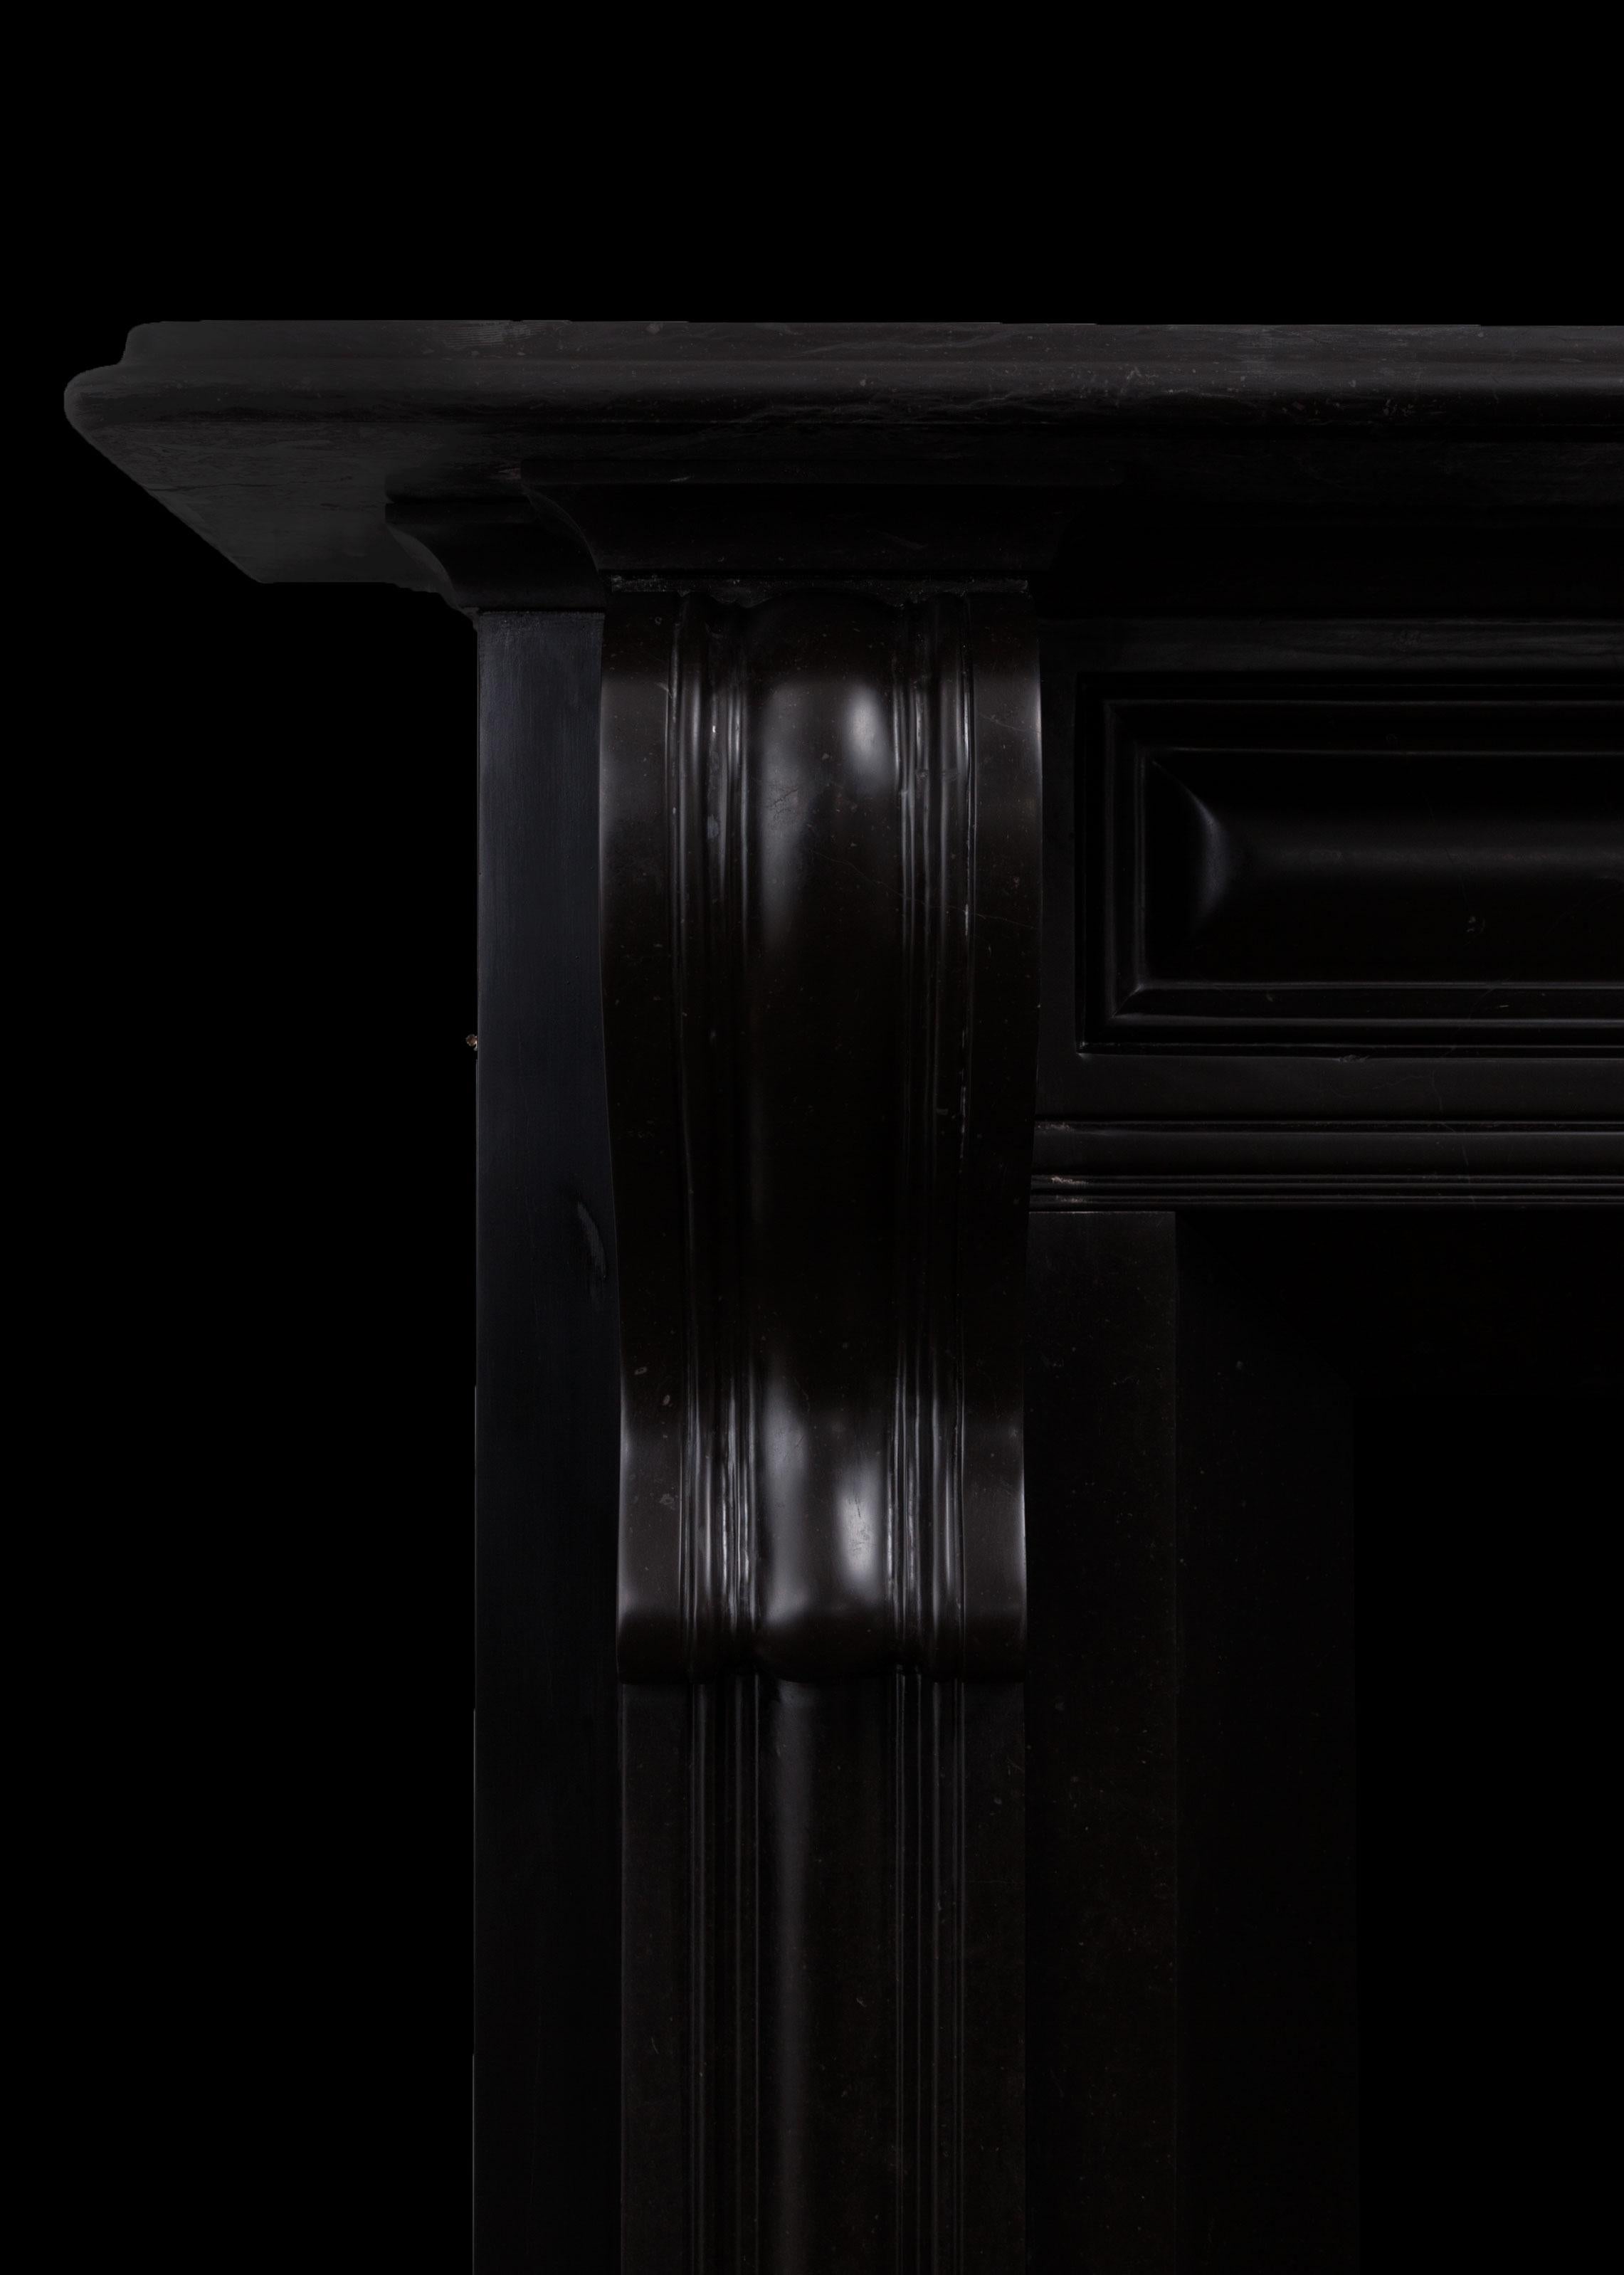 Eine Kamineinfassung aus schwarzem Kilkenny-Marmor.
Dieser Kamin ist im frühen 19. Jahrhundert im irischen Regency-Stil gehalten. Er hat gepolsterte, in Kragsteinen auslaufende Platten, eine sich verjüngende Öffnung und eine tiefe, geformte Ablage.